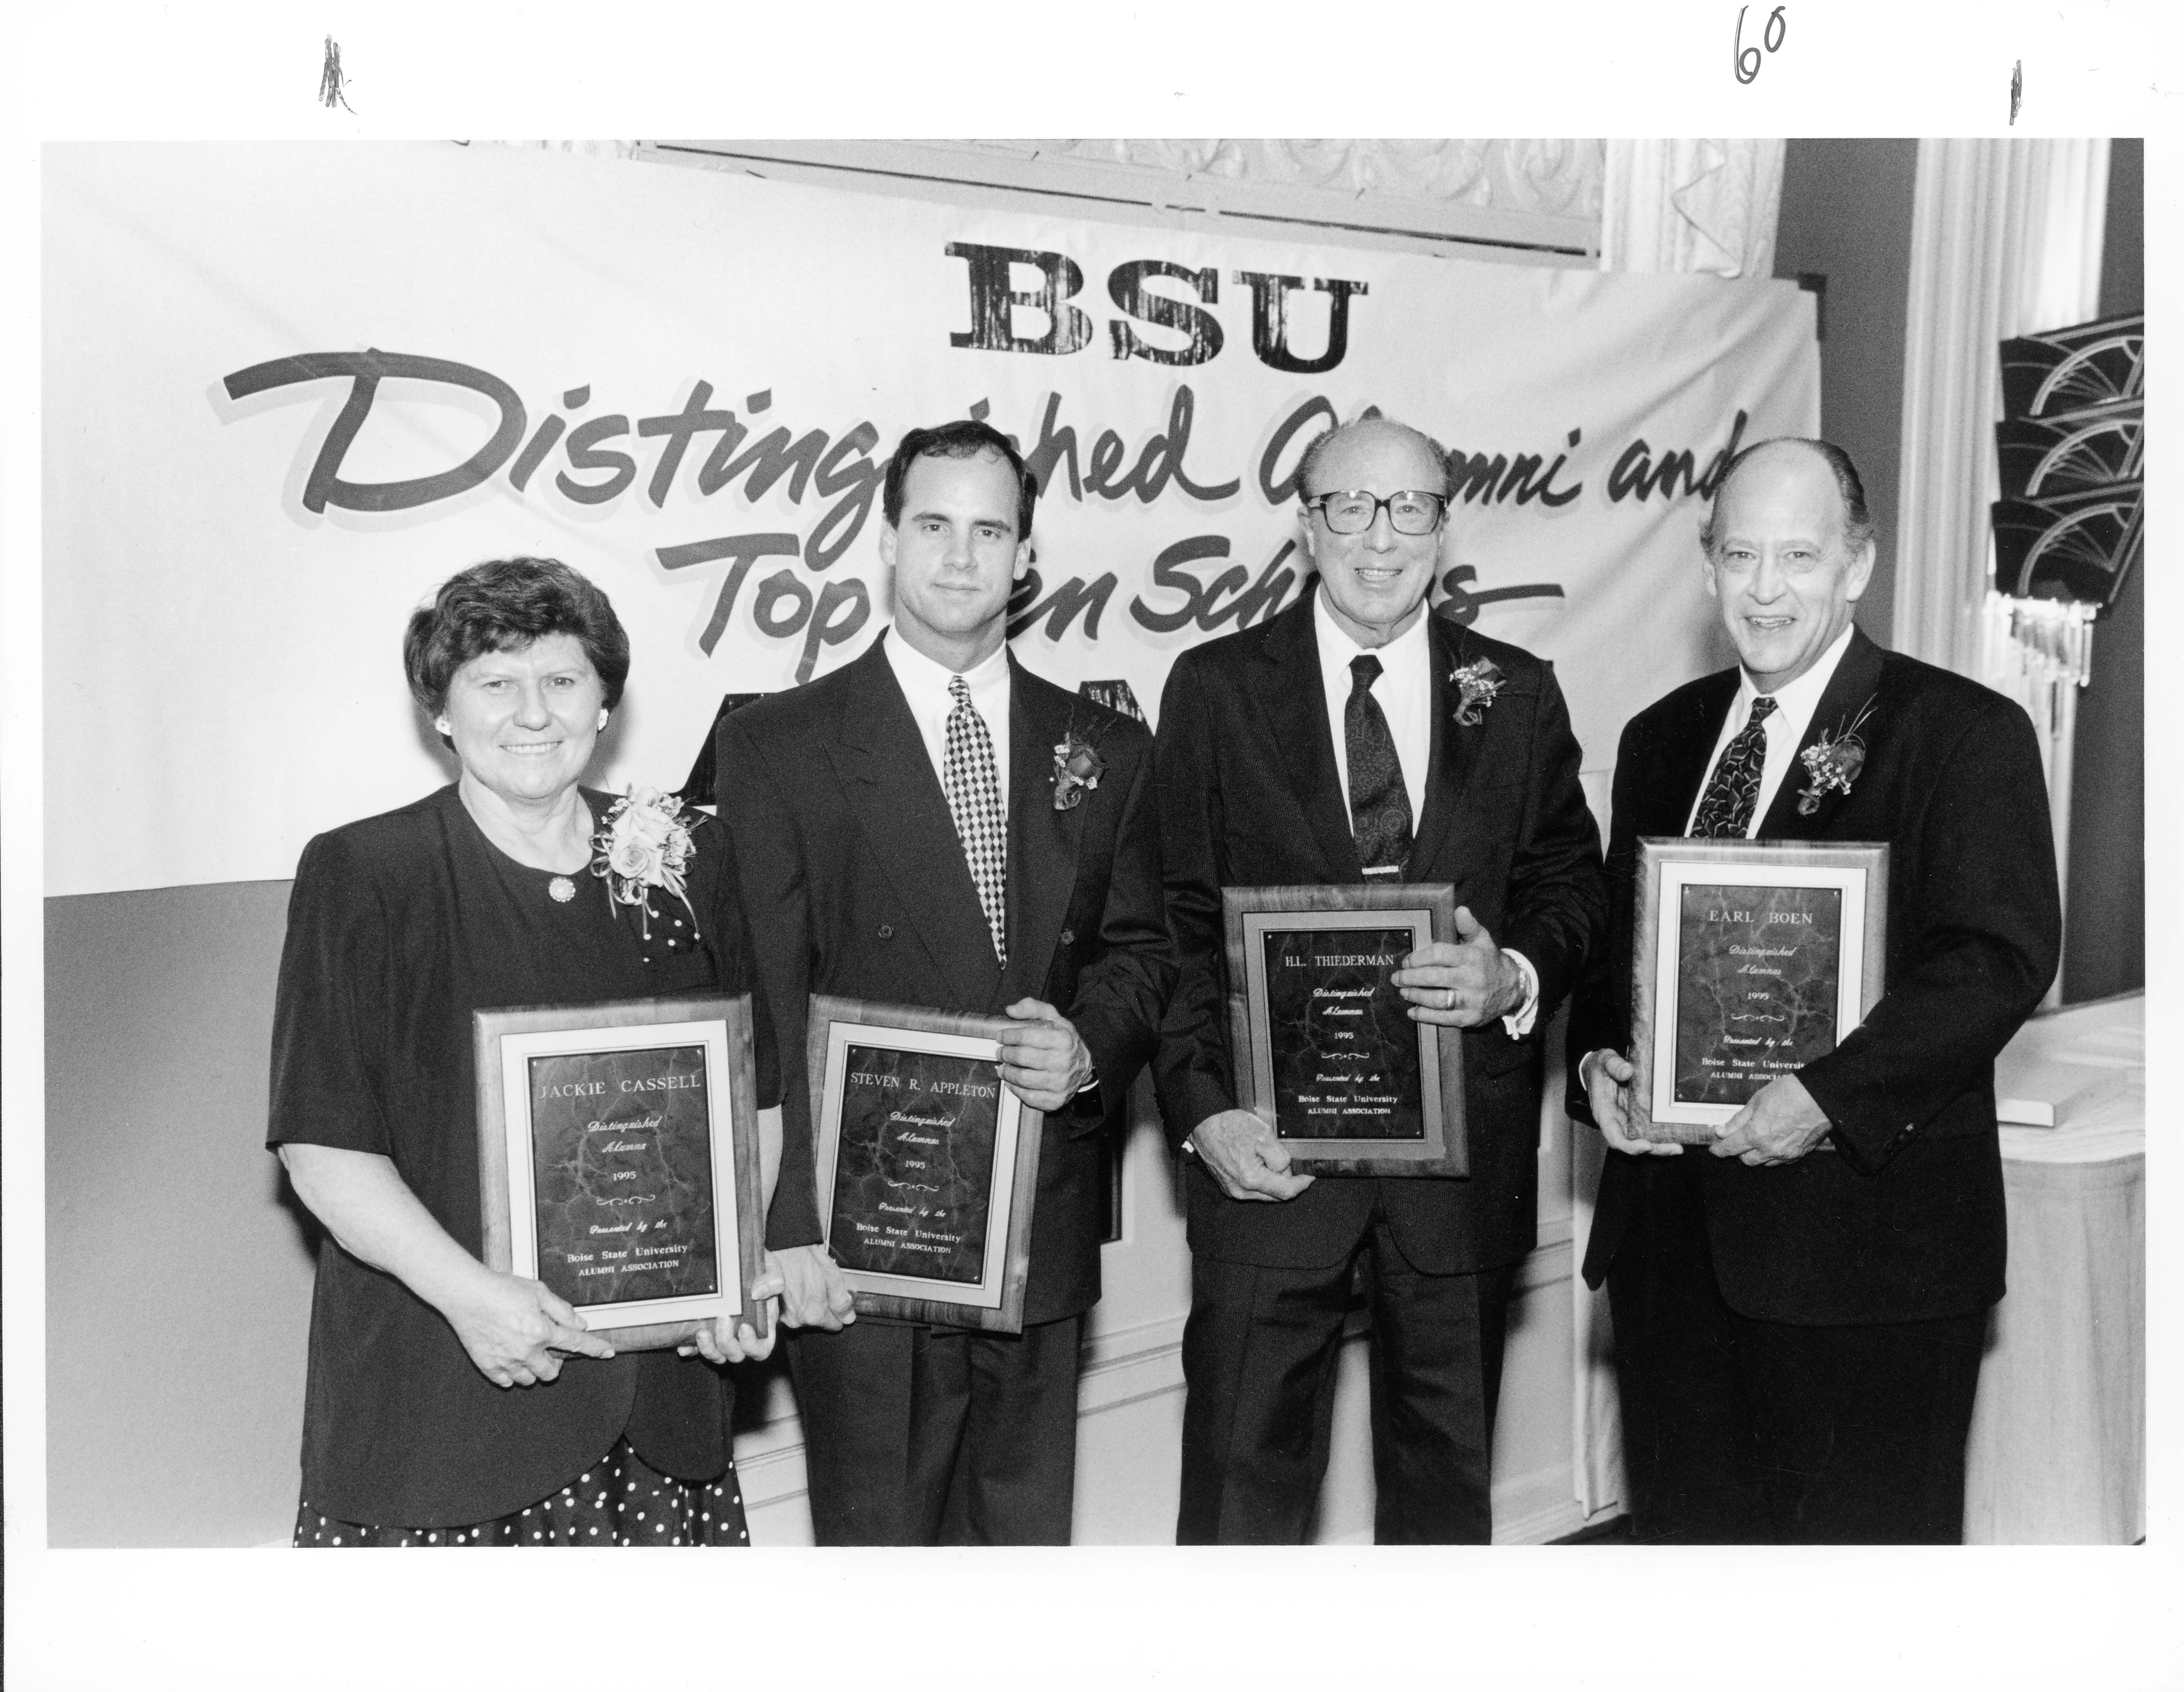 Distinguished Alumni